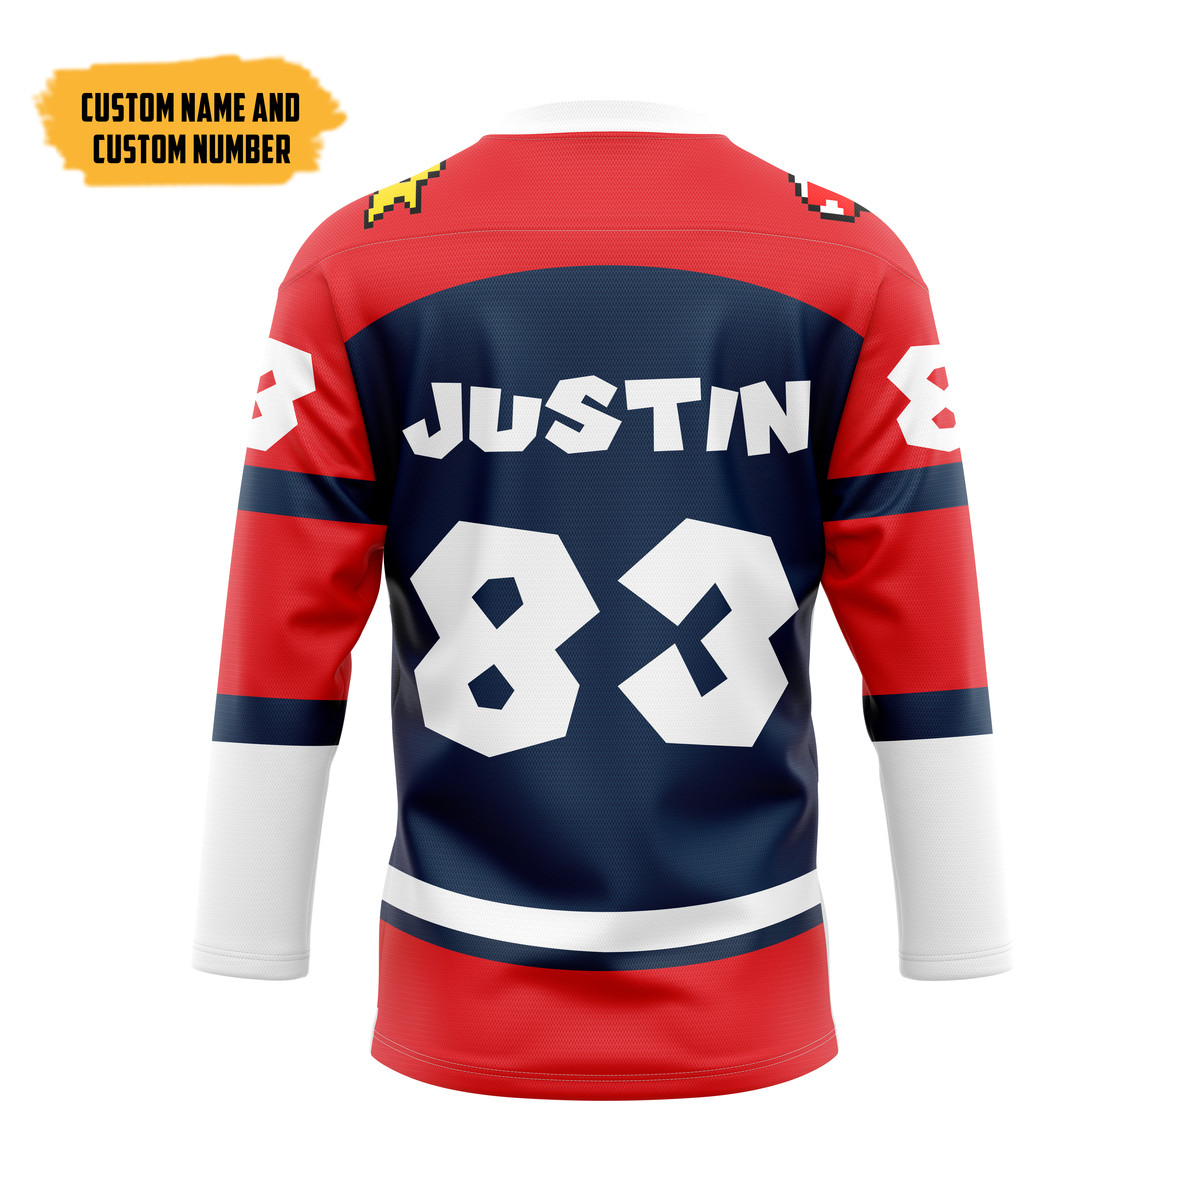 Mario Sports Custom Hockey Jersey2